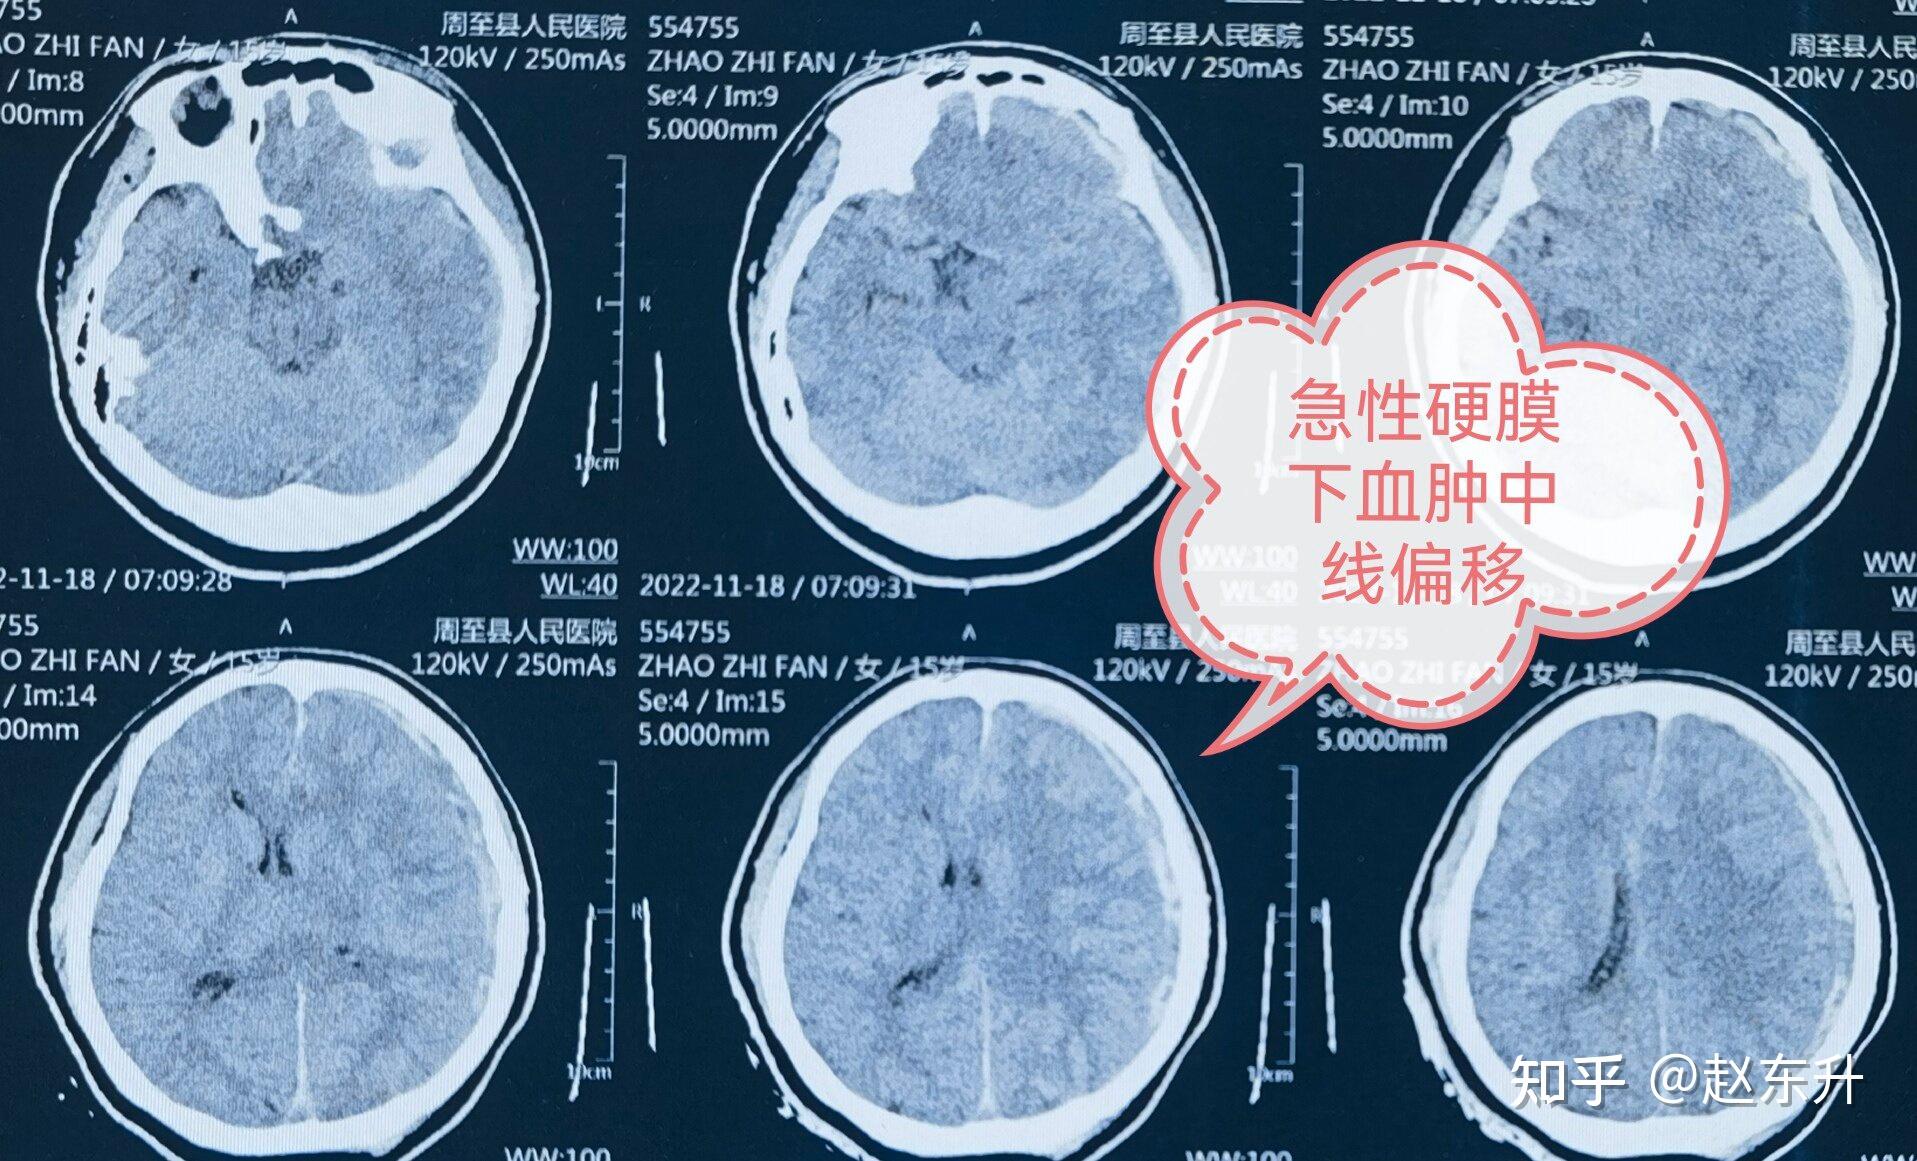 【疾病百科】放射性脑干损伤——早发现早治疗 - 脑医汇 - 神外资讯 - 神介资讯